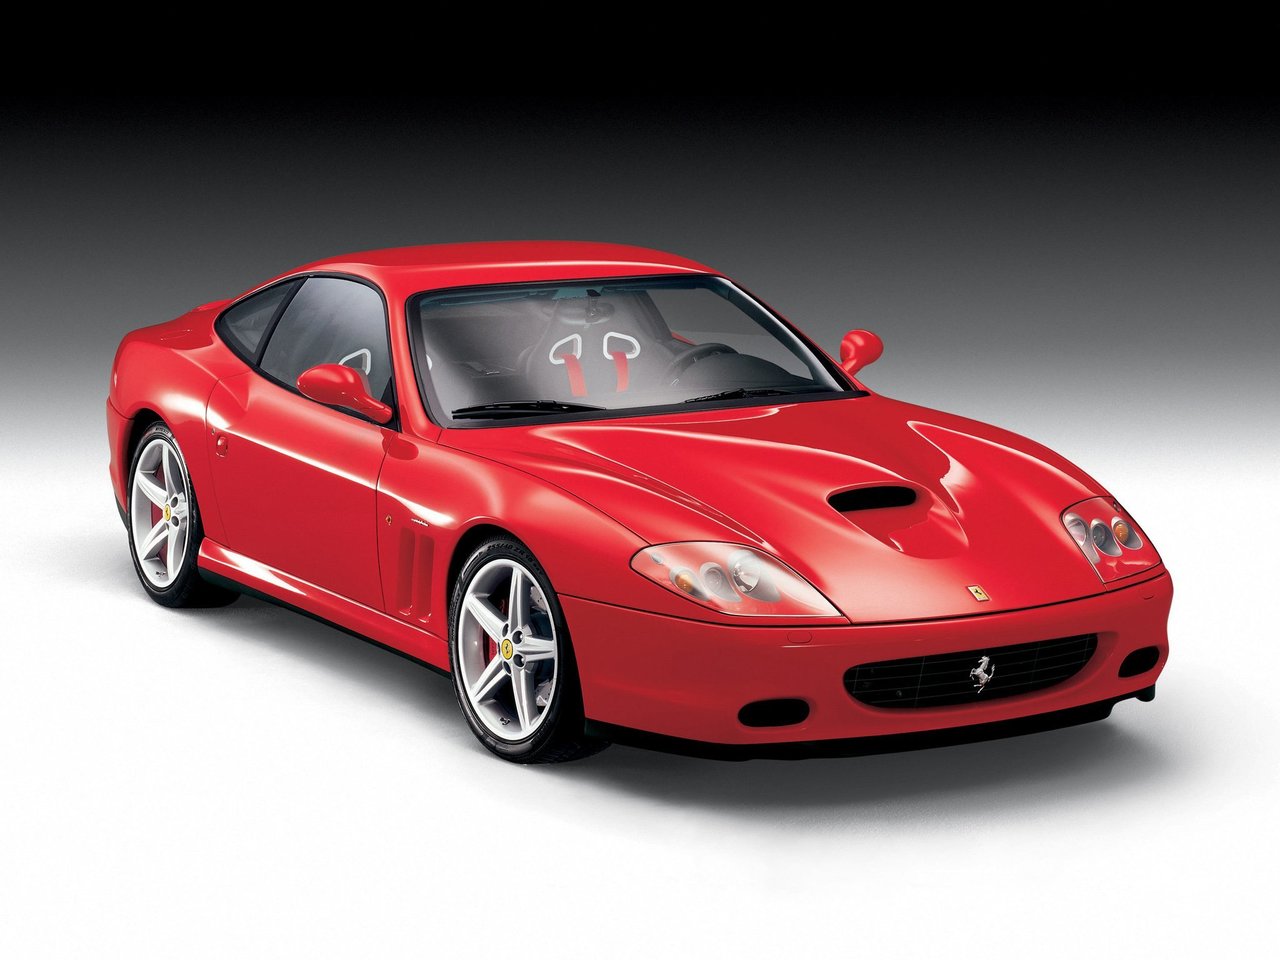 Расход газа одной комплектации купе Maranello Ferrari 575M. Разница стоимости заправки газом и бензином. Автономный пробег до и после установки ГБО.